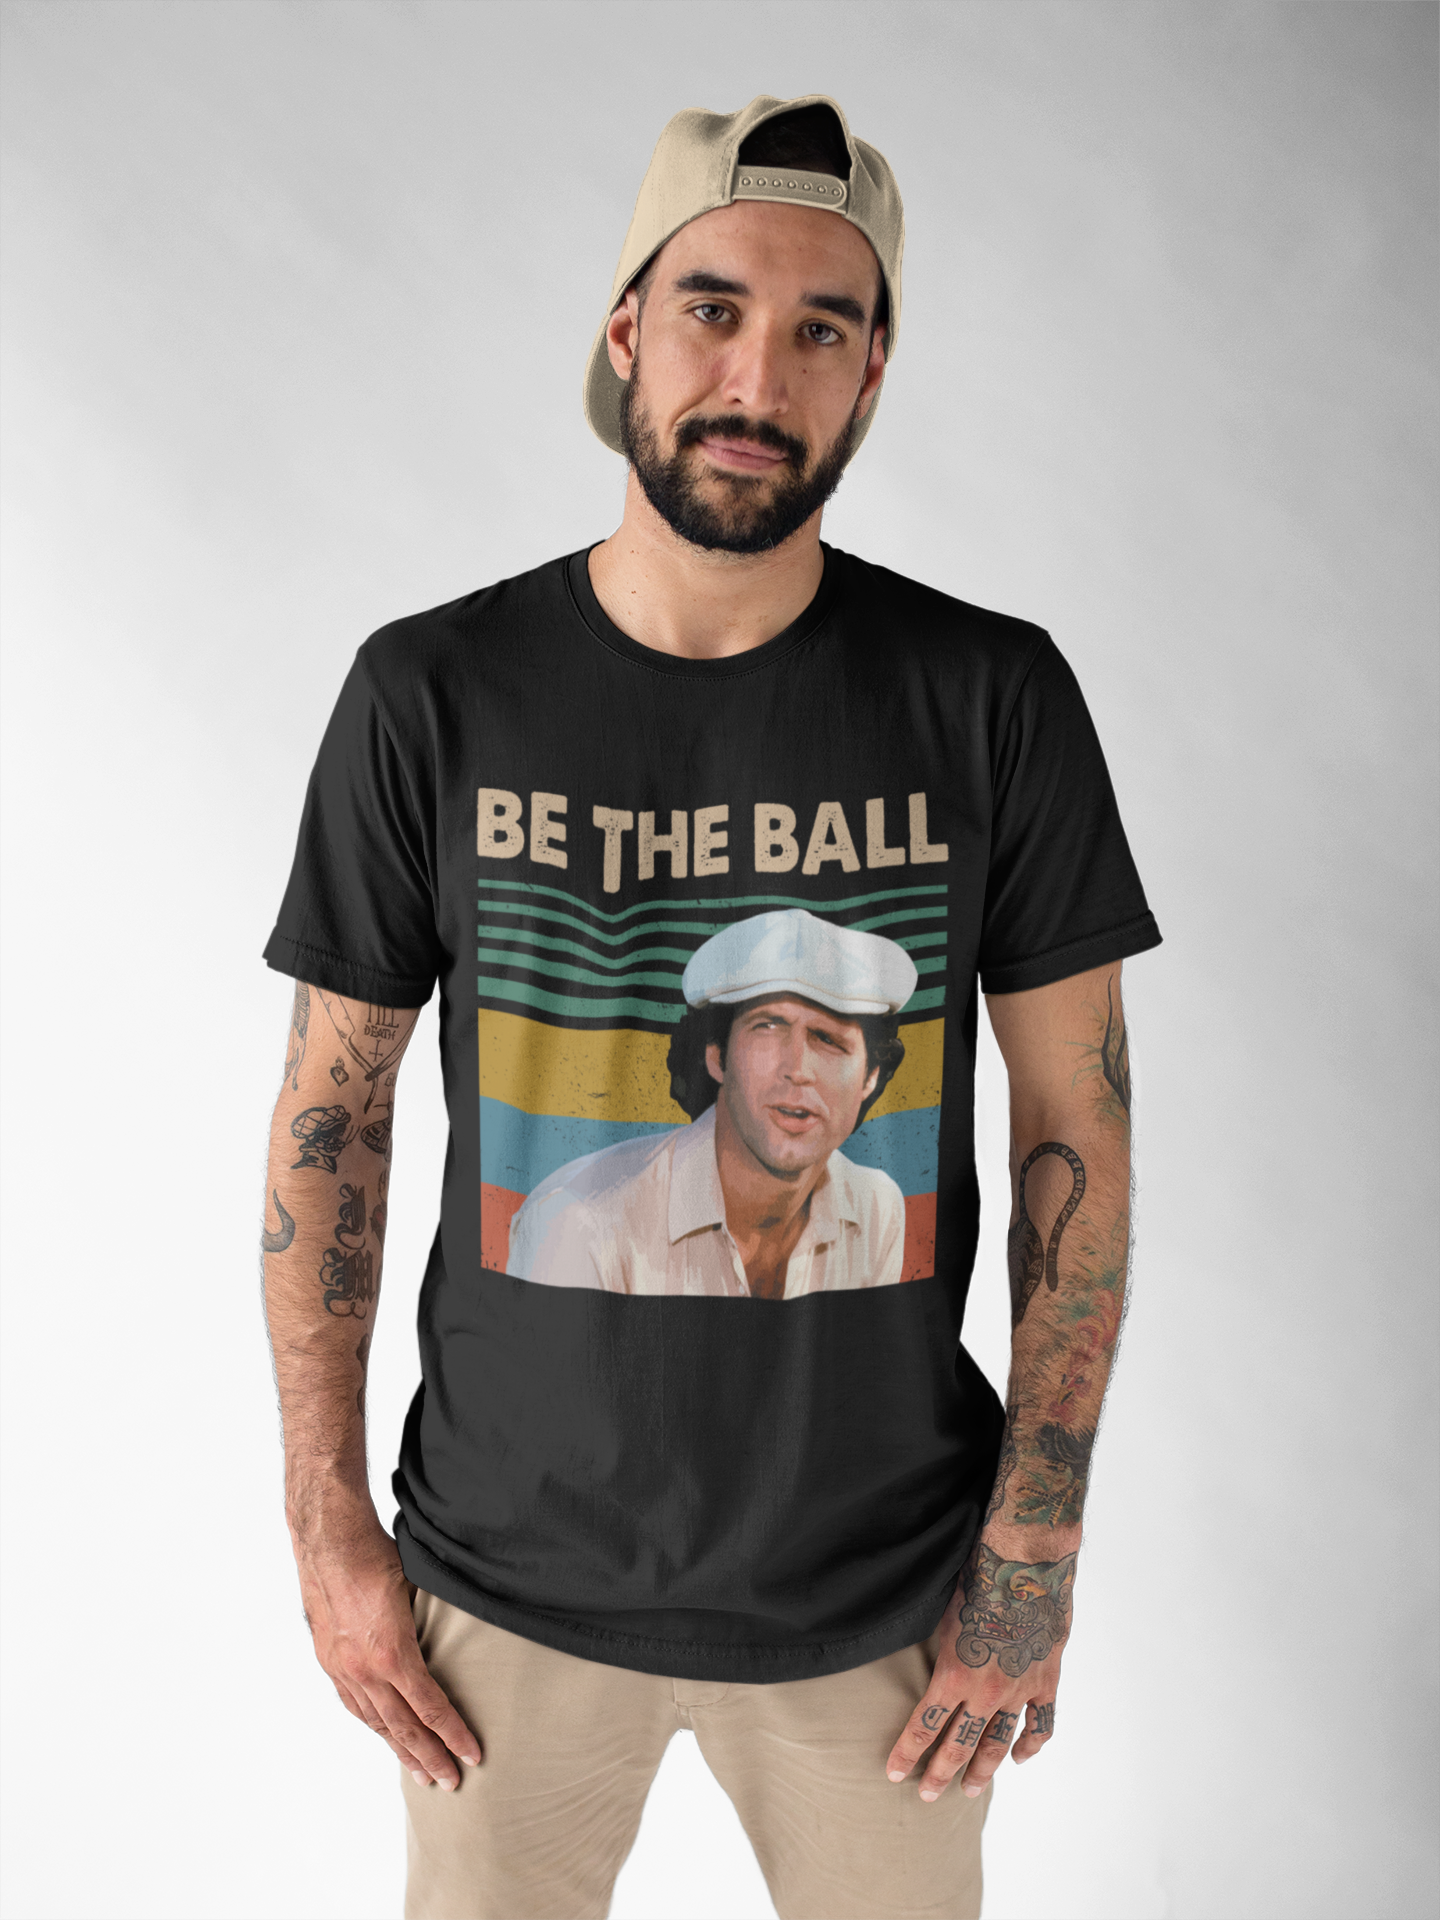 Caddyshack Movie T Shirt, Ty Webb T Shirt, Be The Ball Tshirt